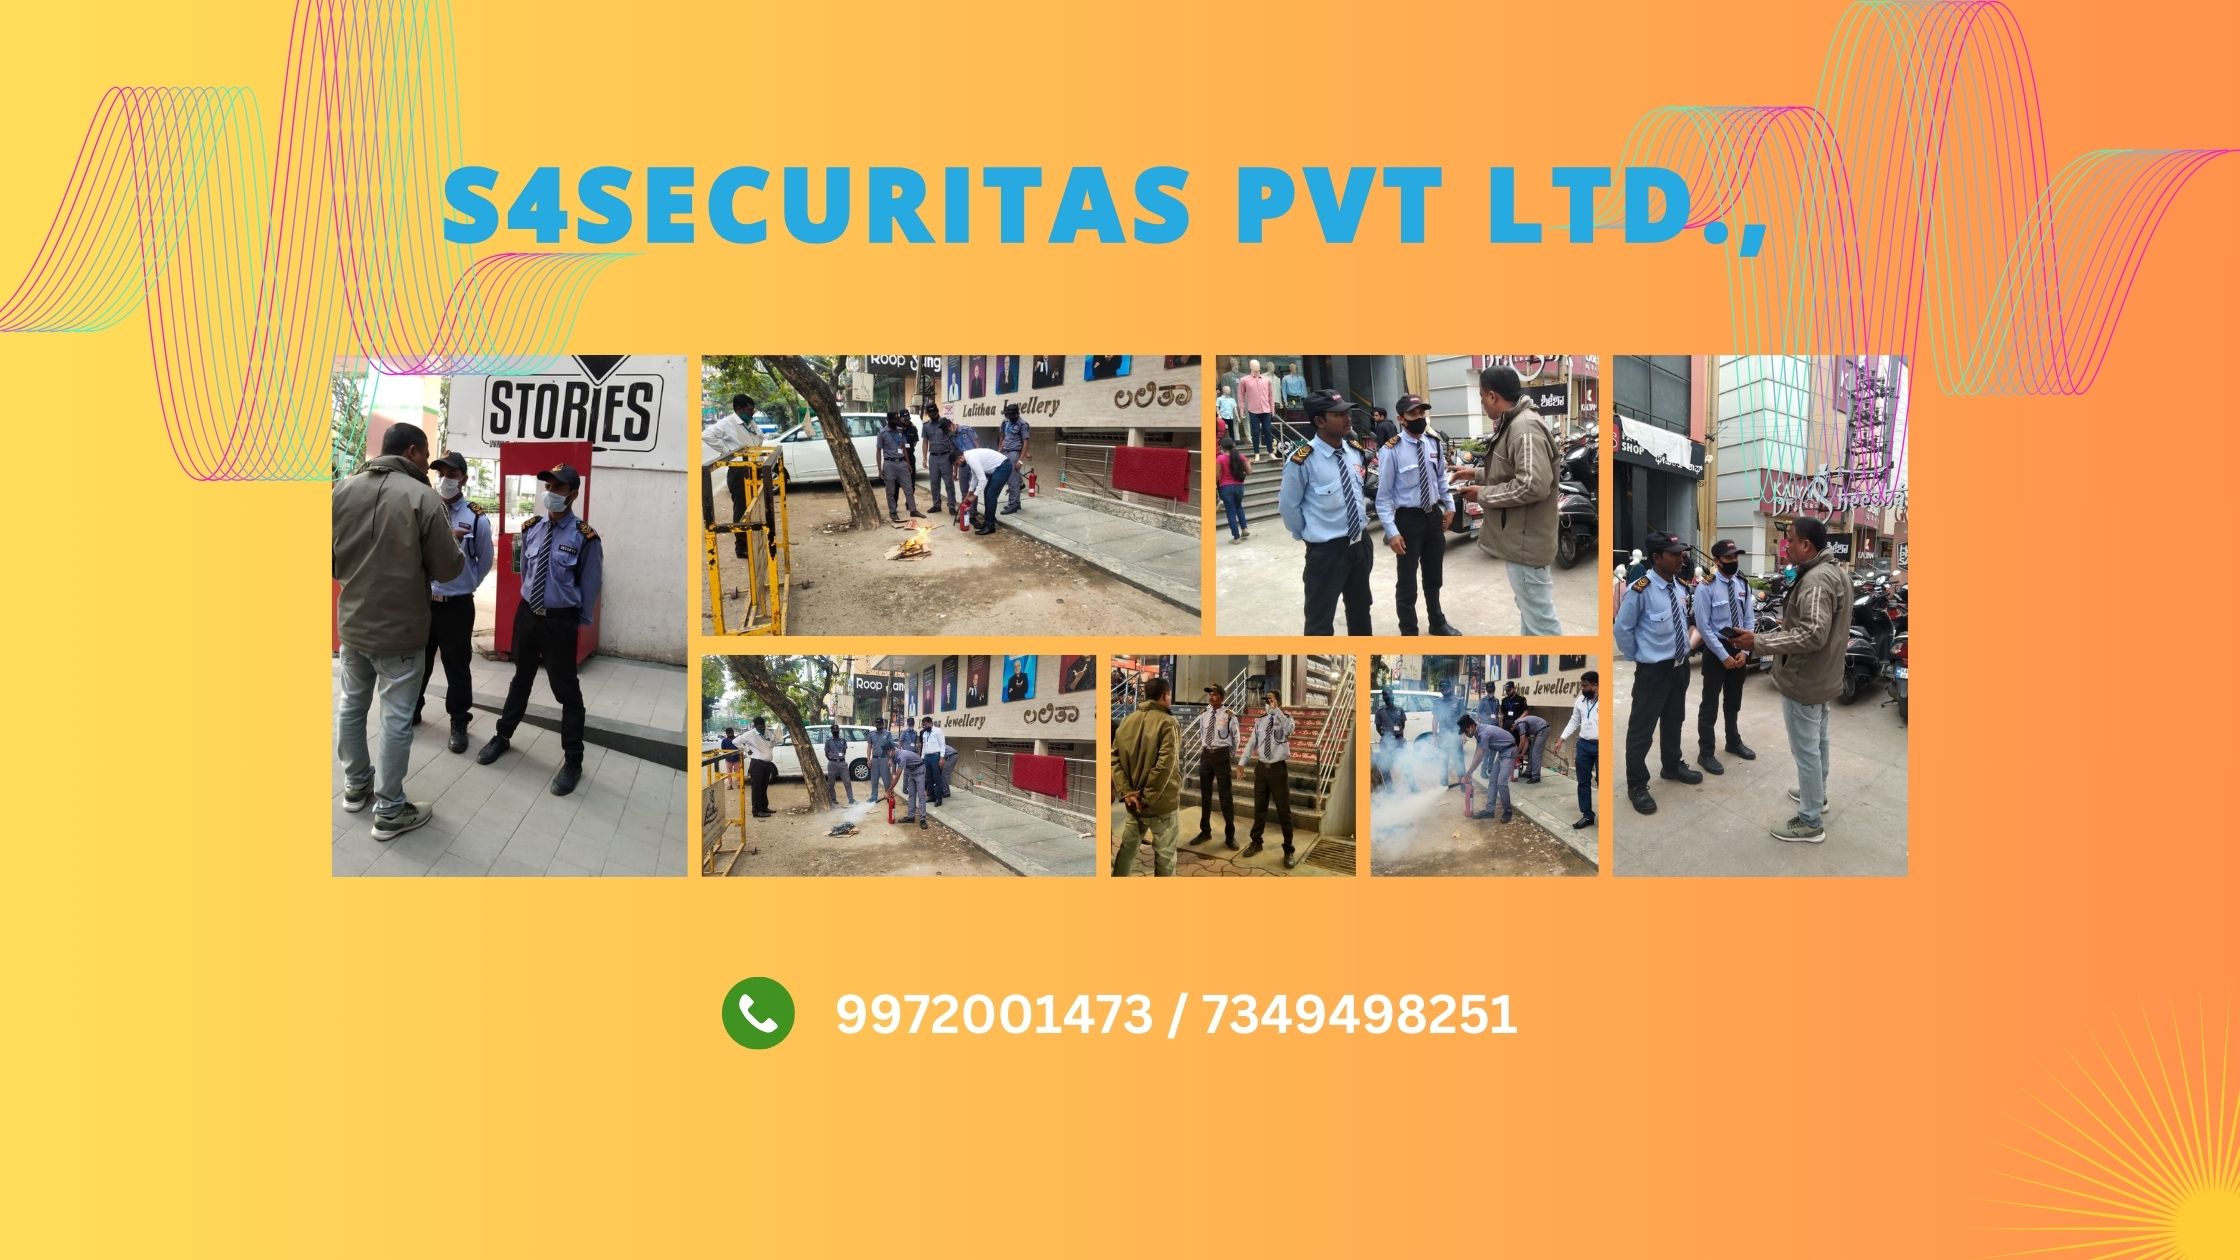 S4SECURITAS PVT LTD - 